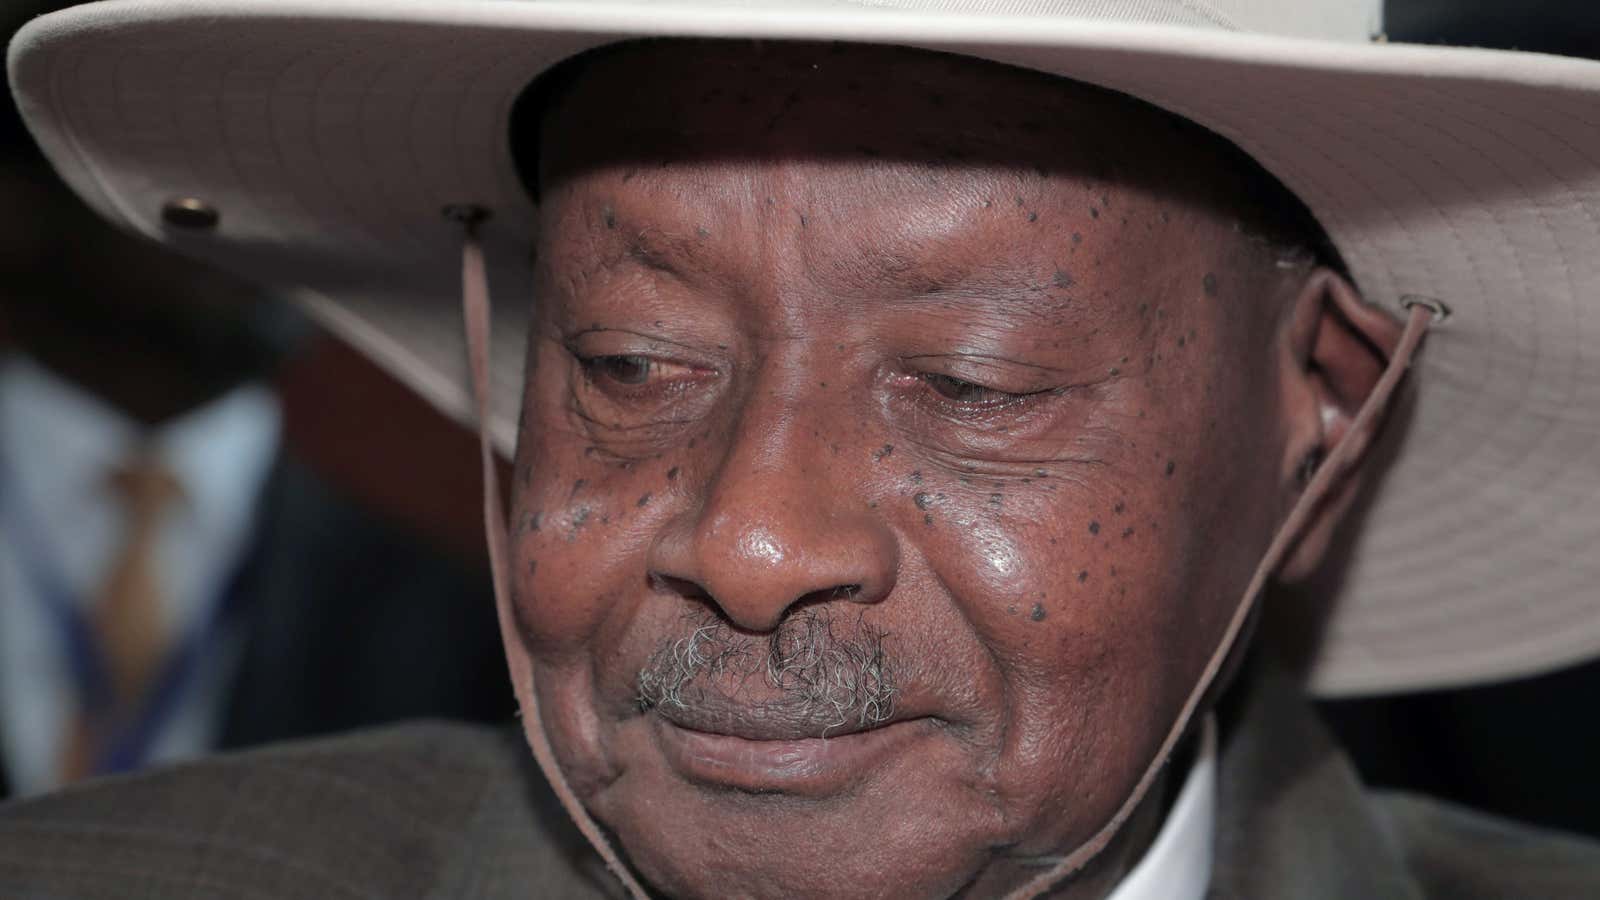 Keeping an eye on you: Uganda’s president Yoweri Museveni